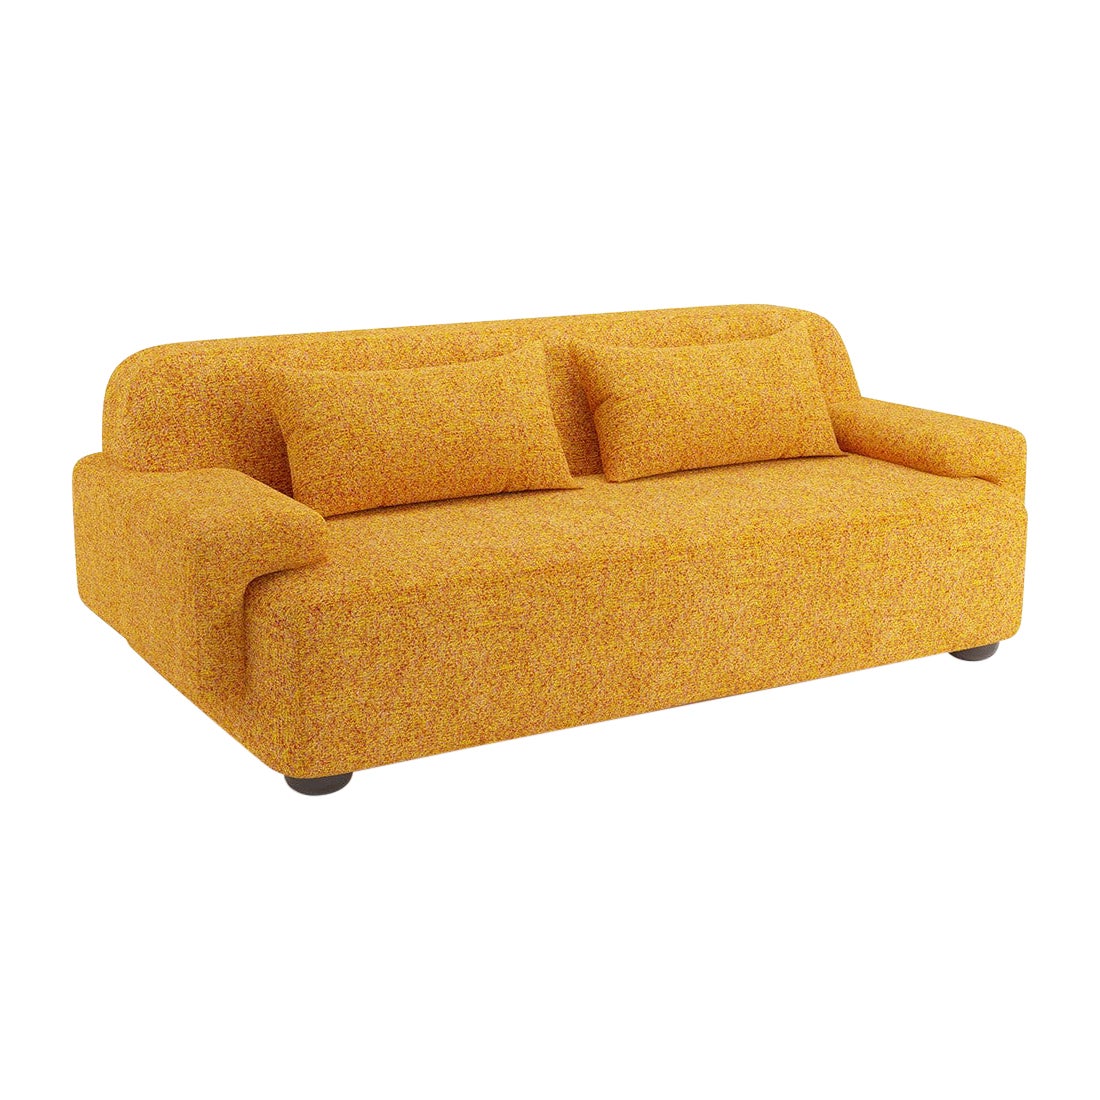 Popus Editions Lena 3 Seater Sofa in Saffron Zanzi Linen & Wool Blend Fabric For Sale